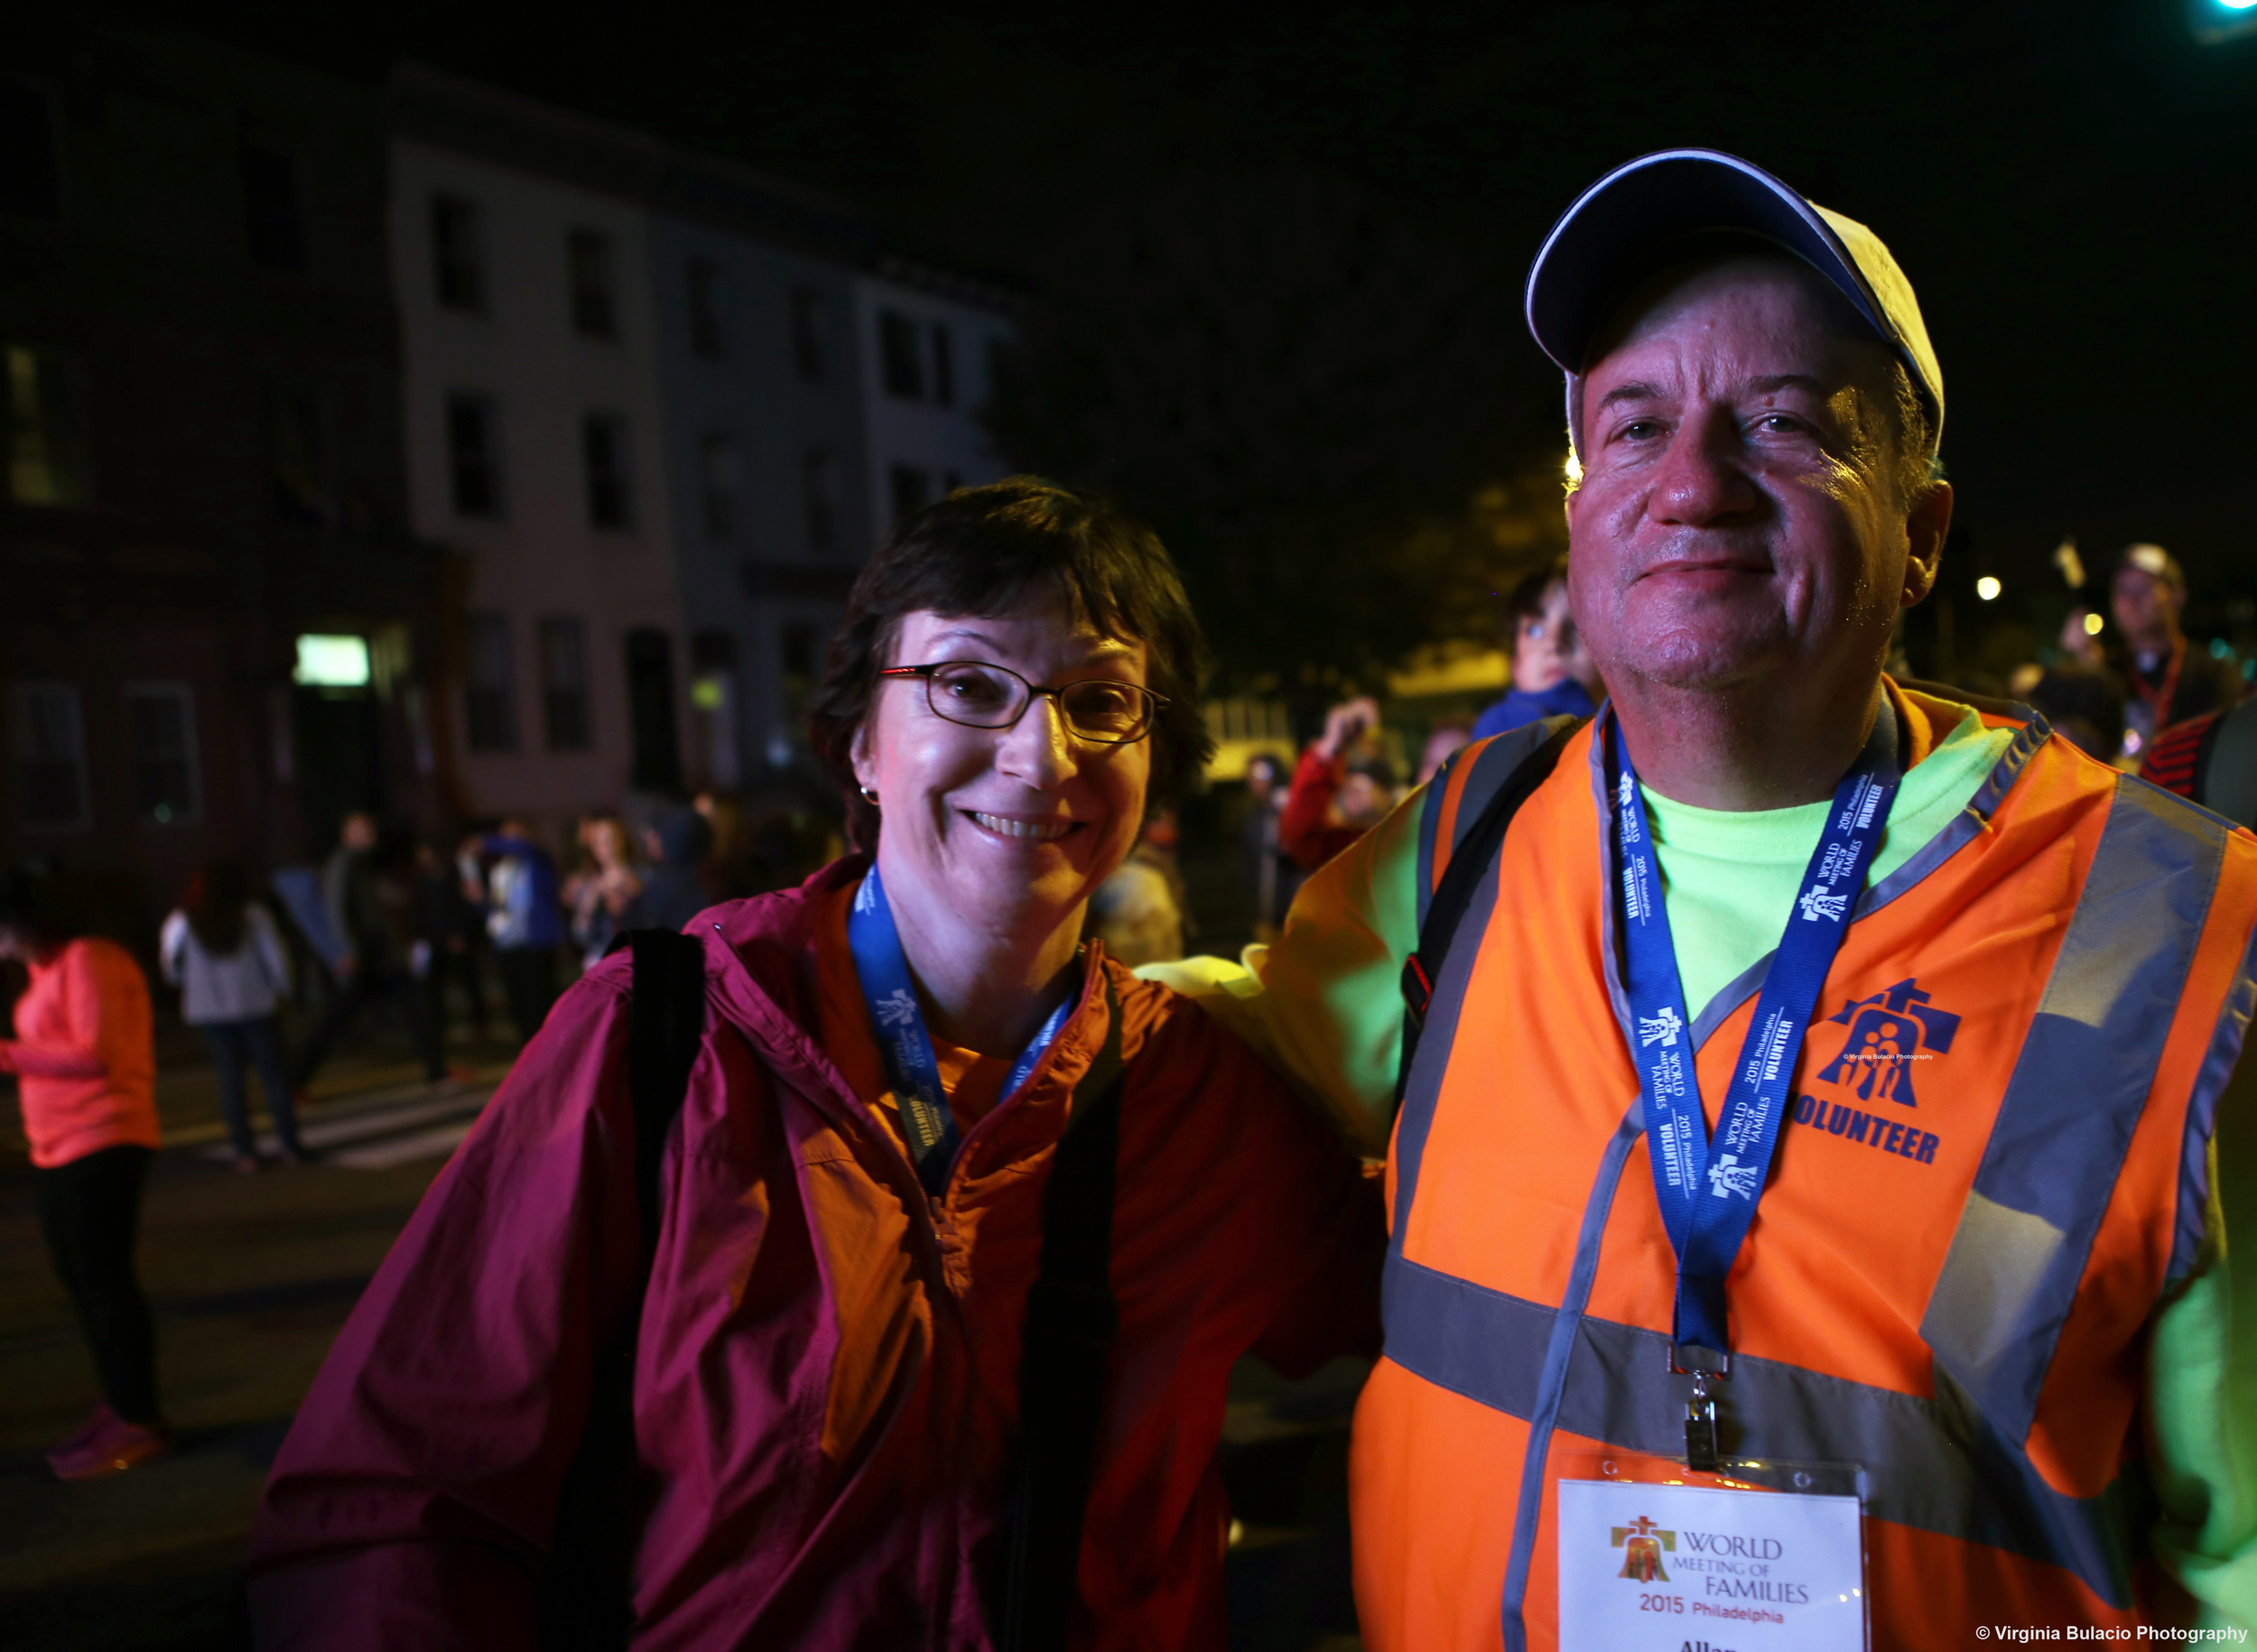  Theresa Casciato (izquierda) y uno de los capitanes de voluntarios Allan Costello, durante el Encuentro Mundial de las Familias en Filadelfia.&nbsp;    